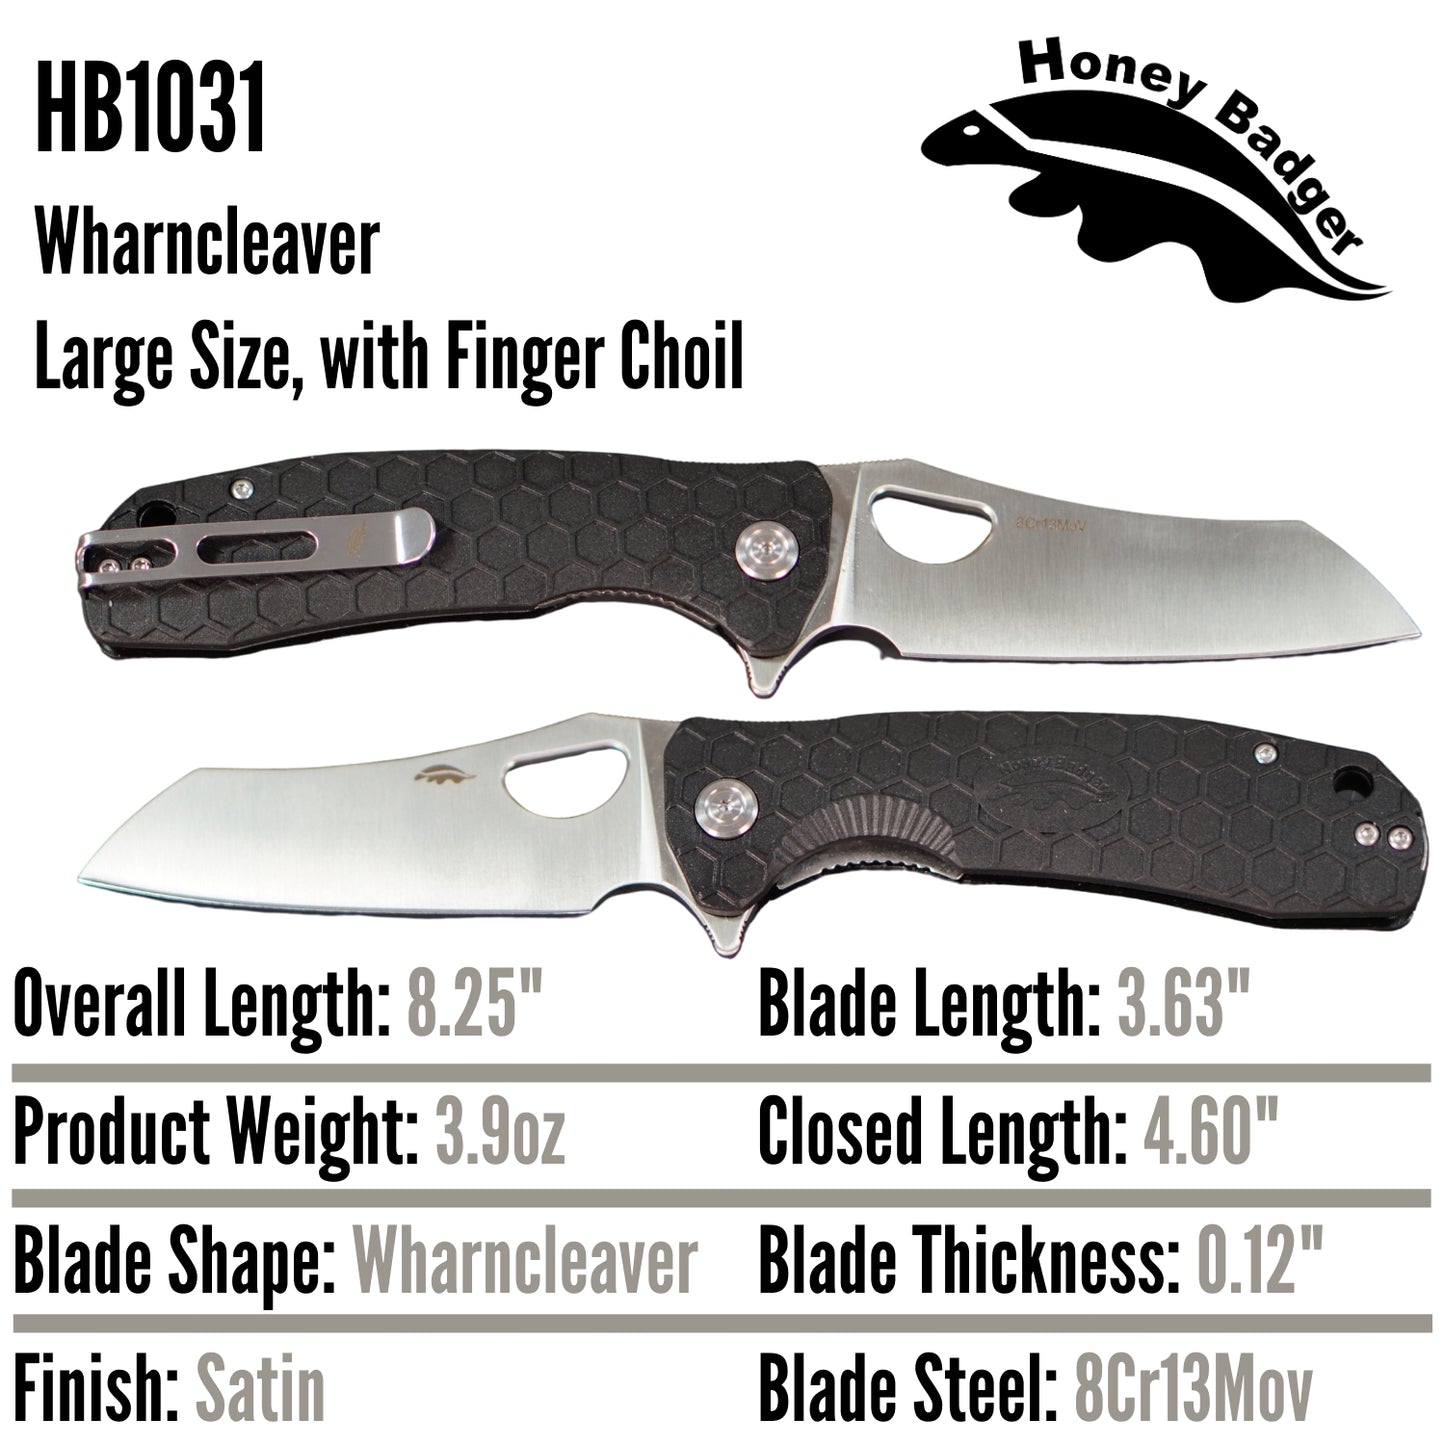 HB1031 - HONEY BADGER WHARNCLEAVER LARGE BLACK